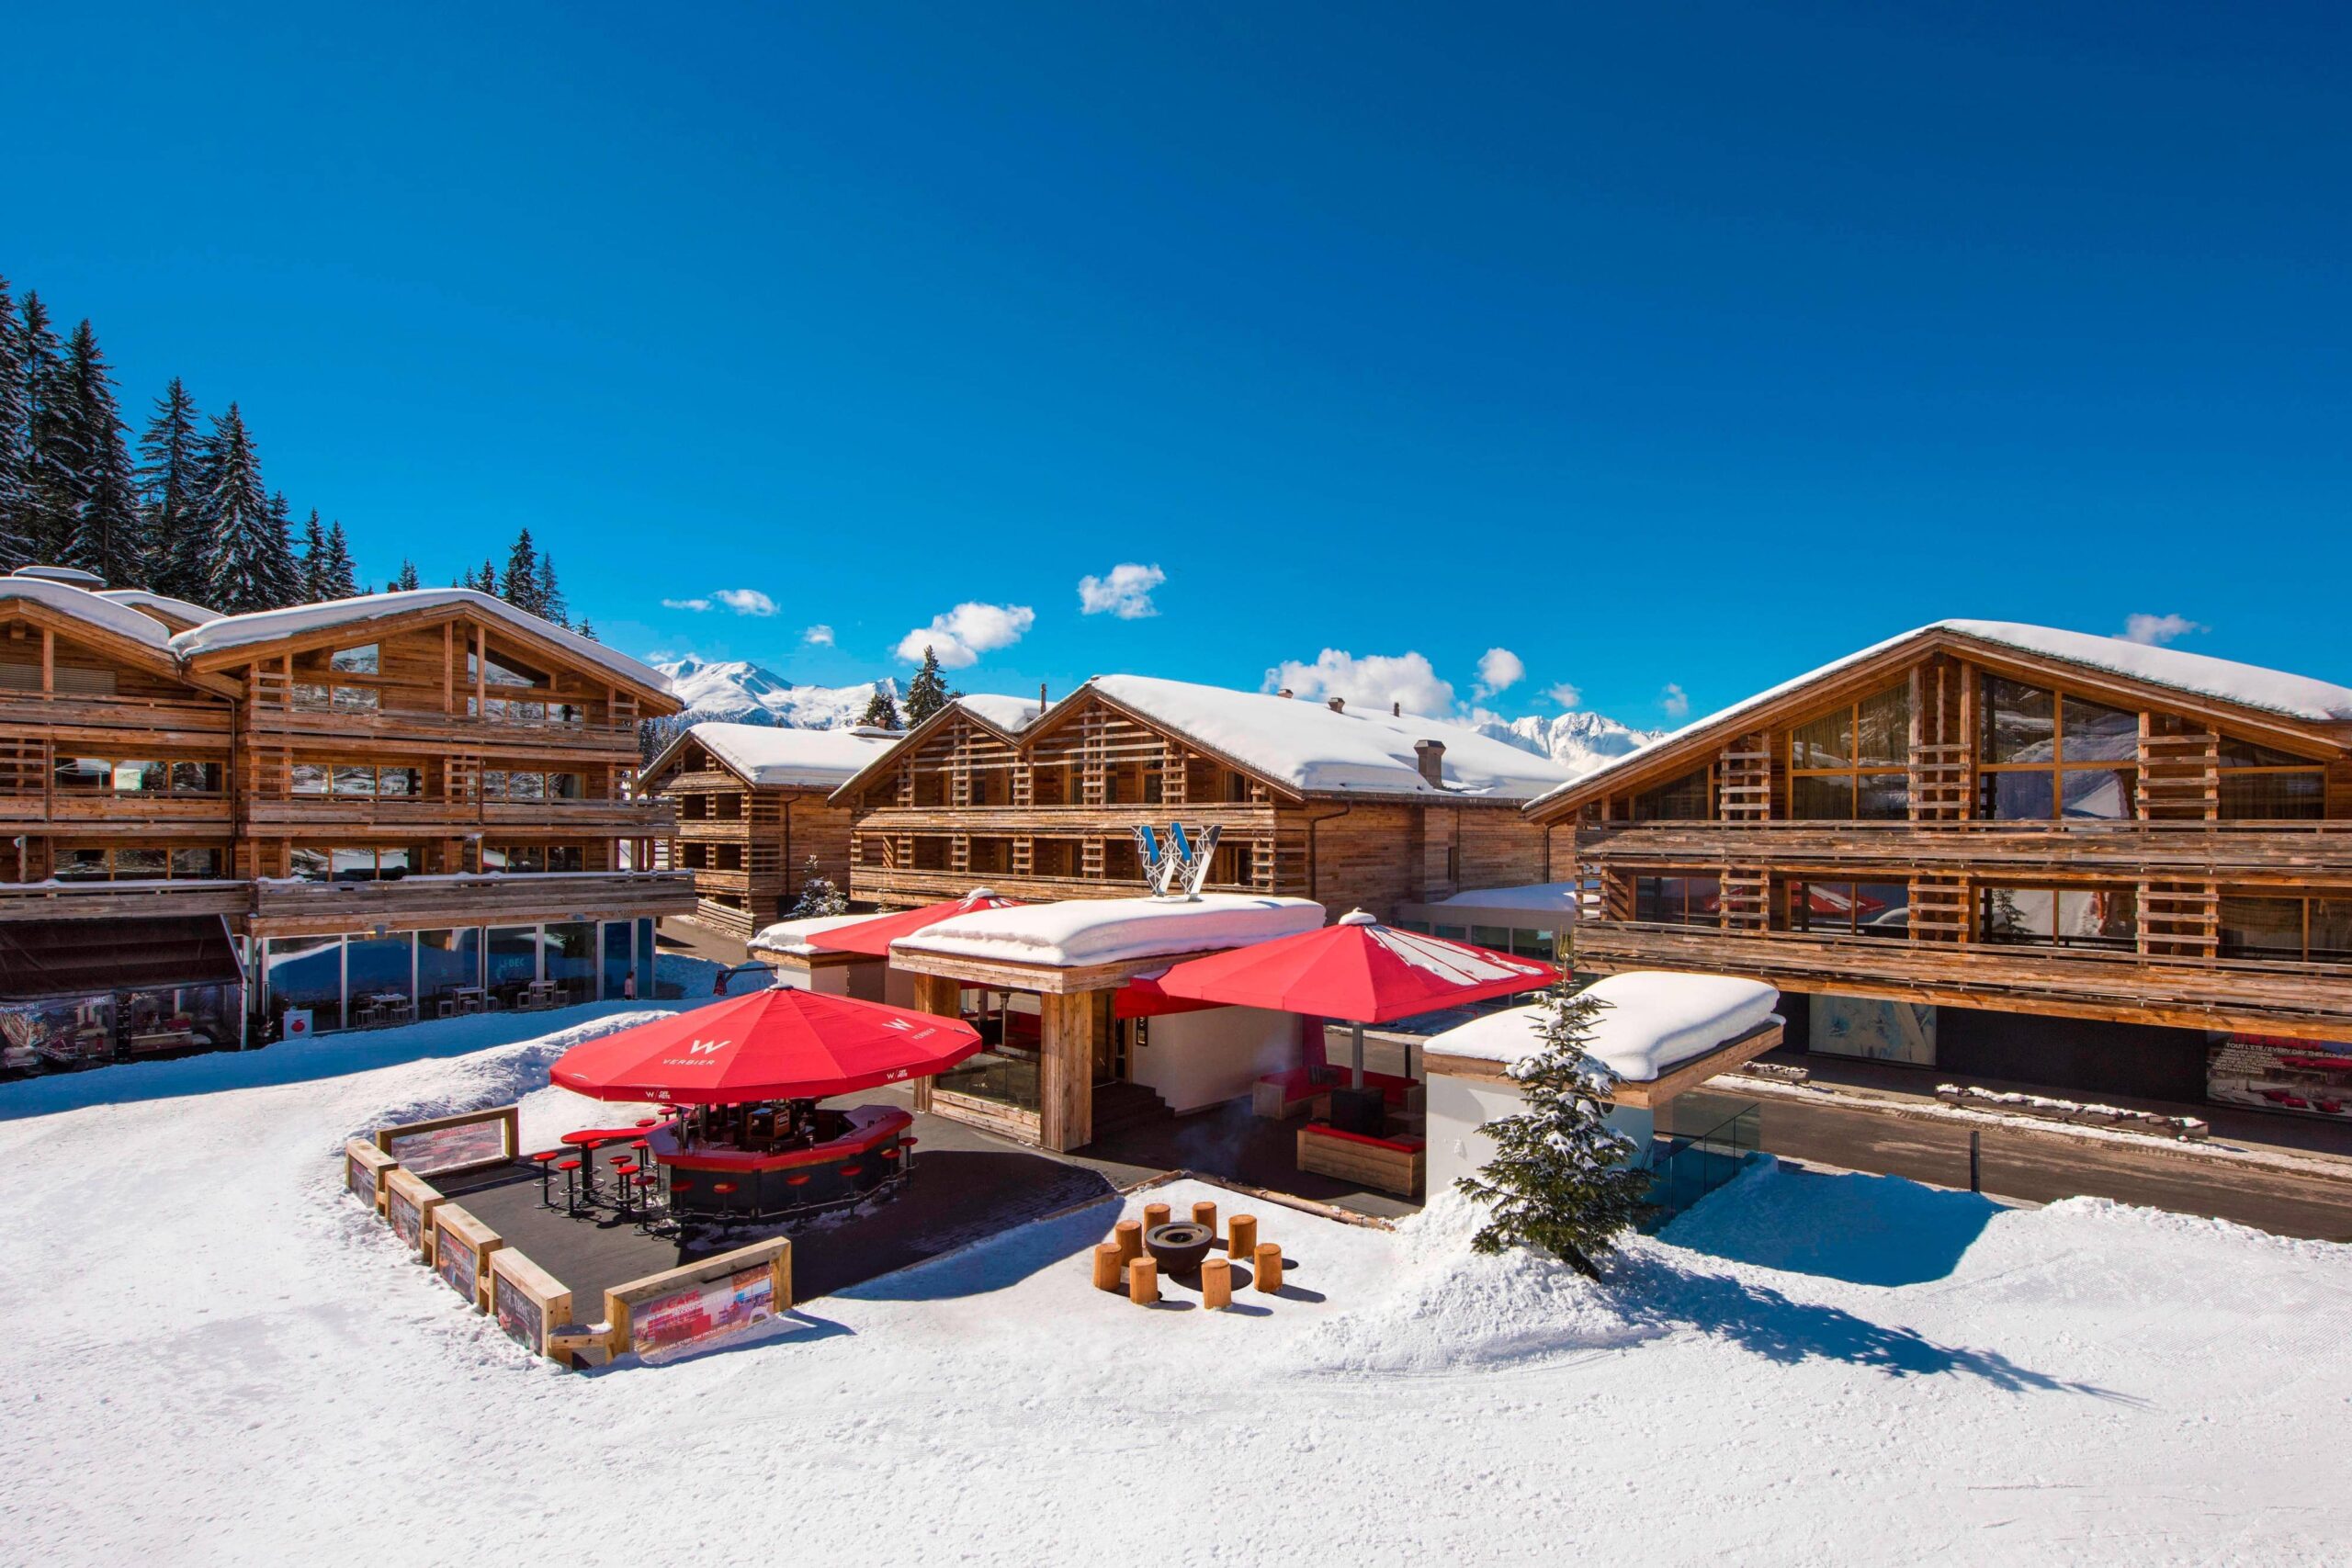 Ski Resort 2022 Qualche idea per la vostra settimana bianca